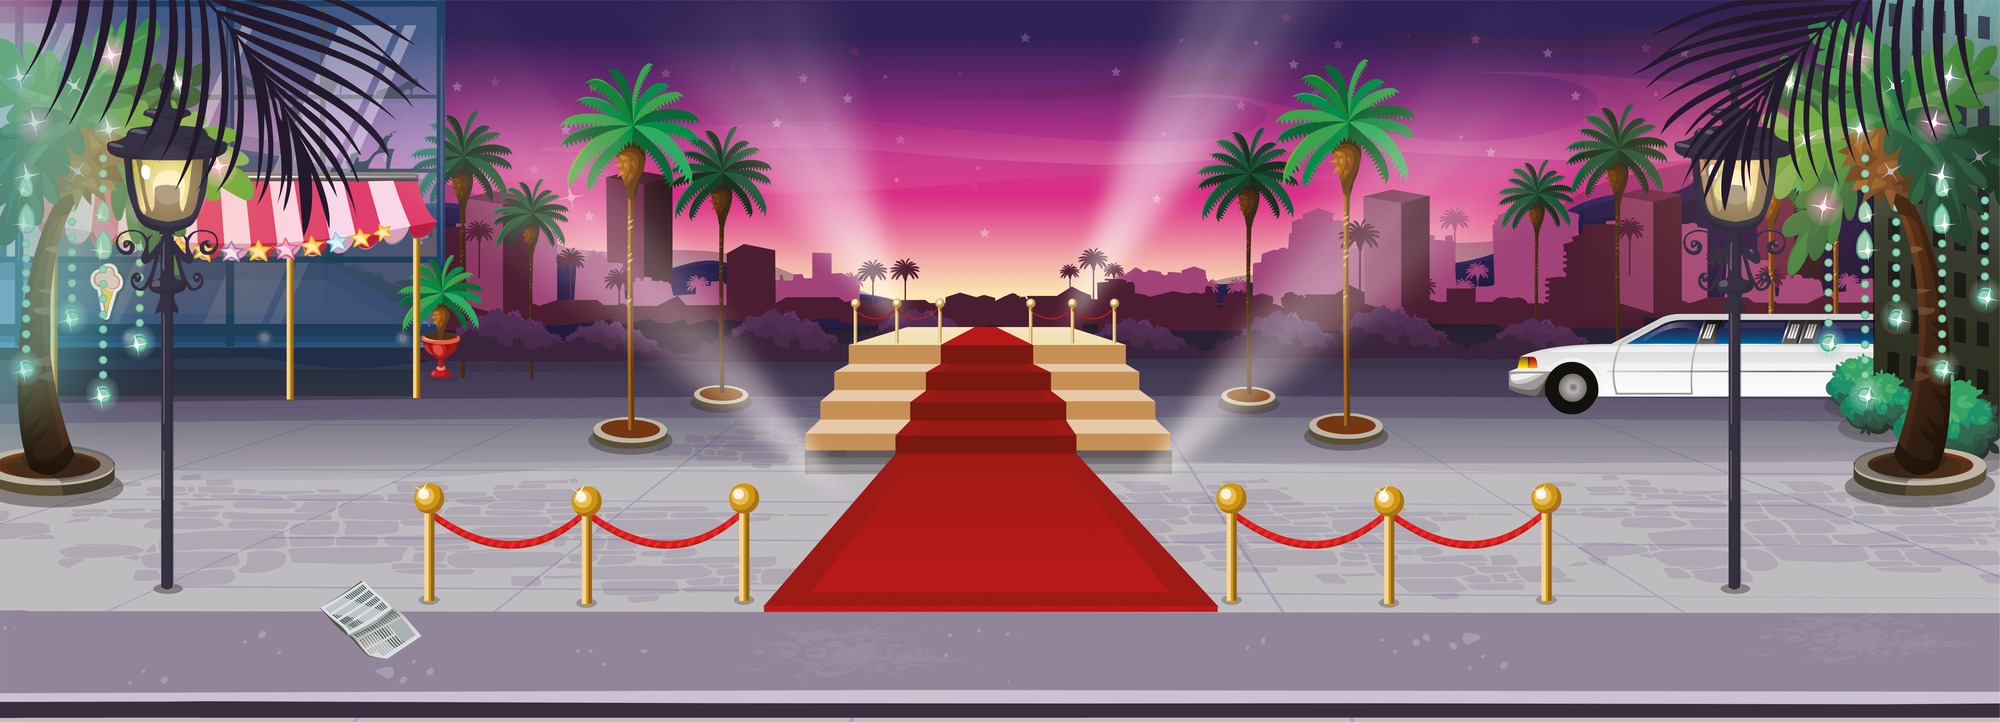 carta da parati star del cinema,tappeto rosso,leggero,tappeto,scenario teatrale,pavimentazione